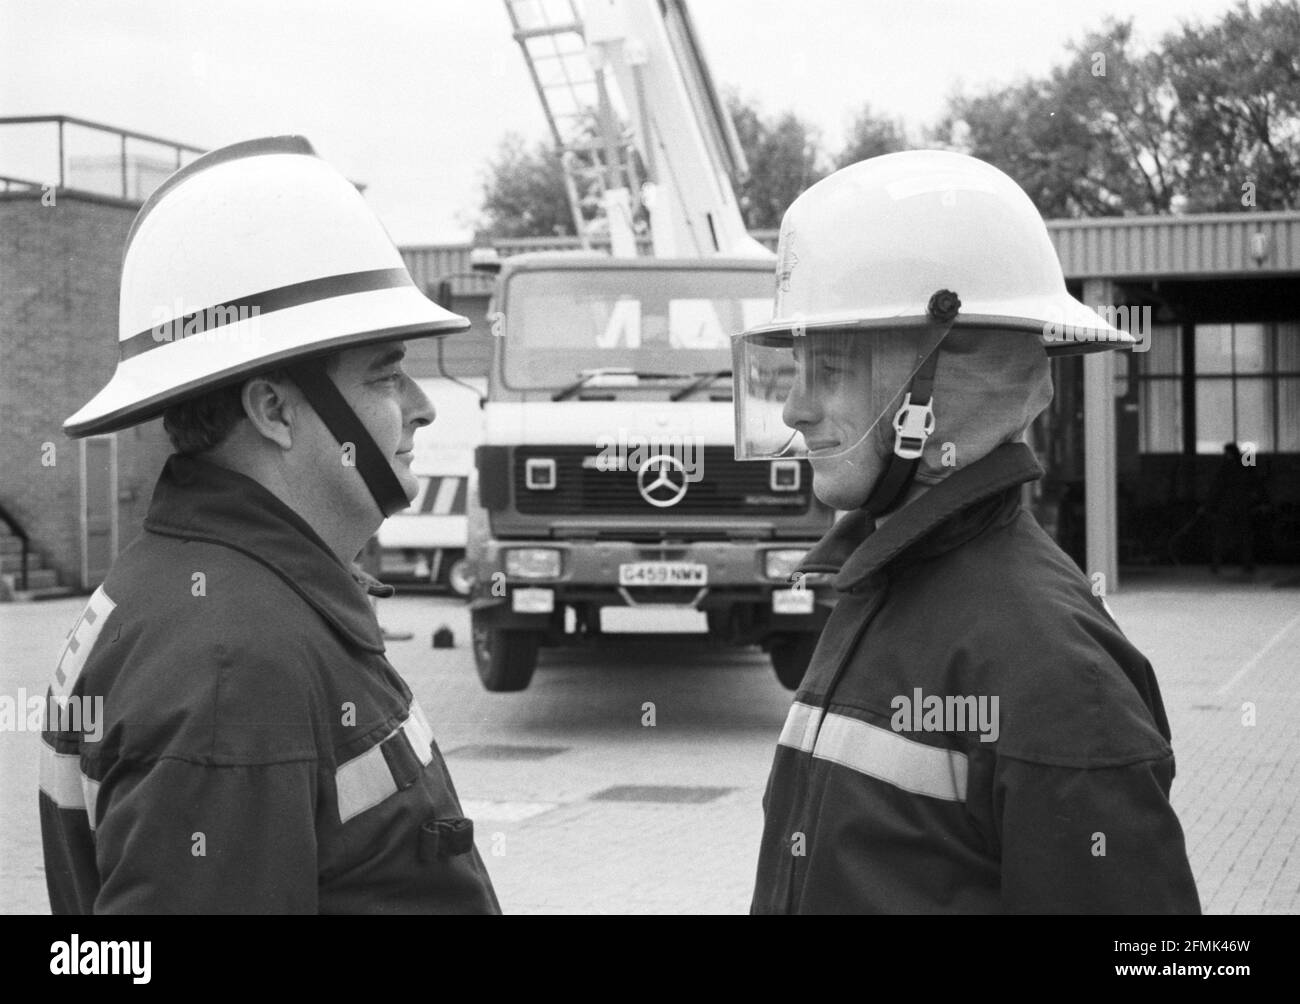 Nouveau v ancien style de casque de pompier. Le nouveau casque, à droite, est dévoilé à la caserne de pompiers de Salisbury, dans le Wiltshire, en 1990. Banque D'Images